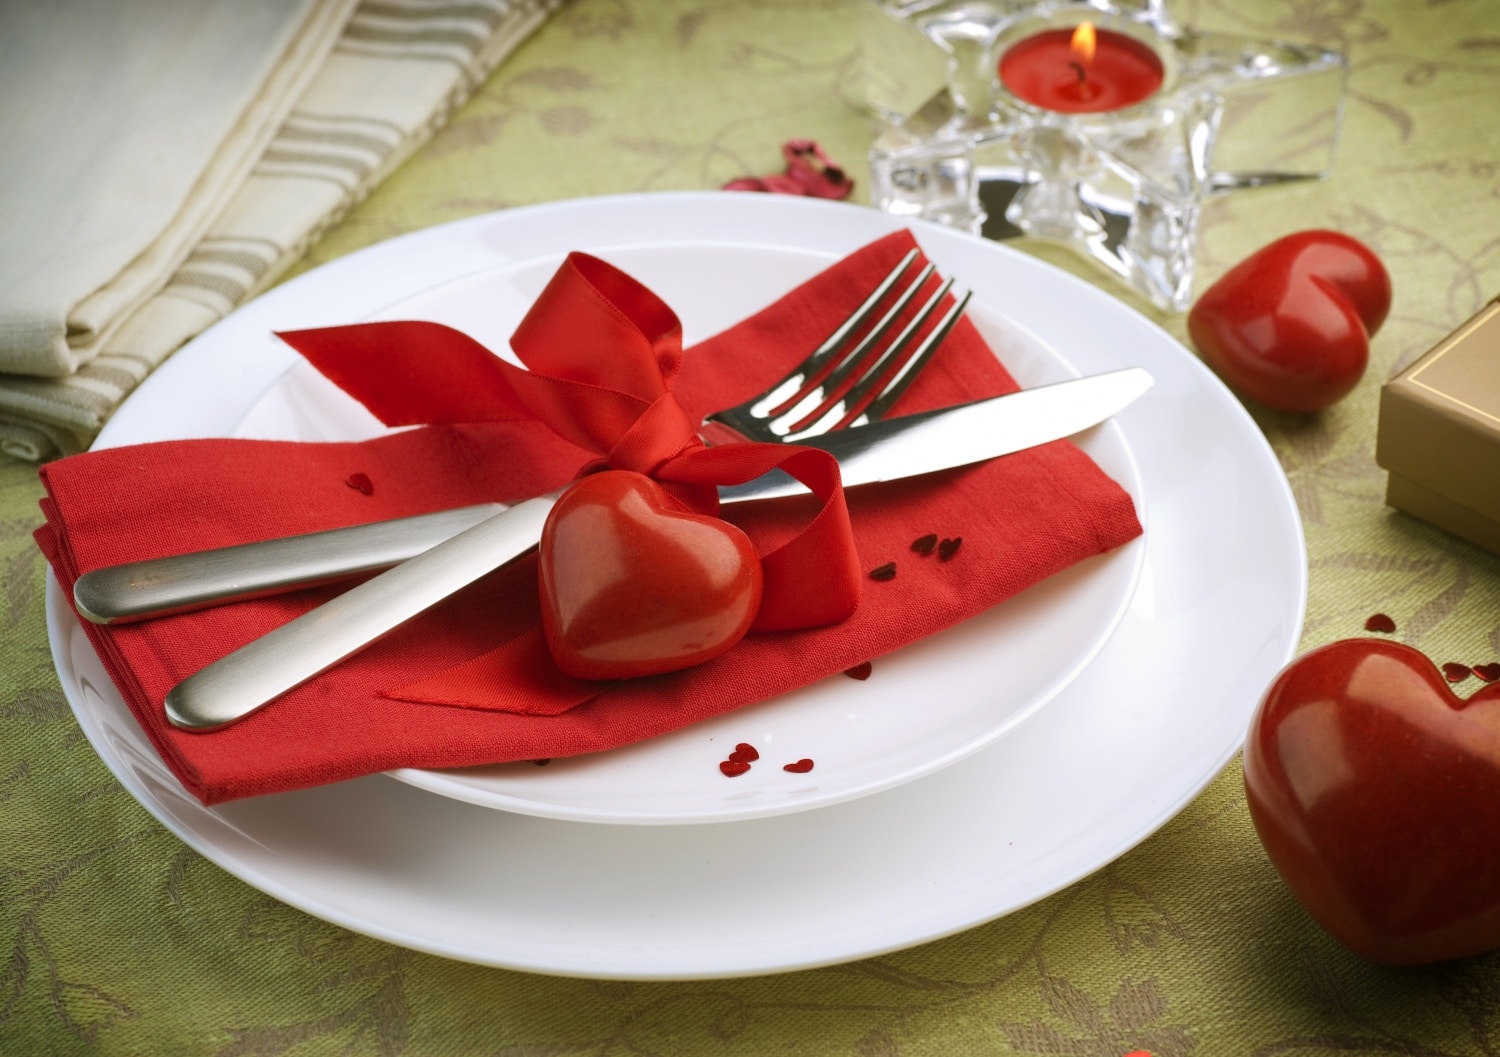 Így teríts meg egy romantikus vacsorához